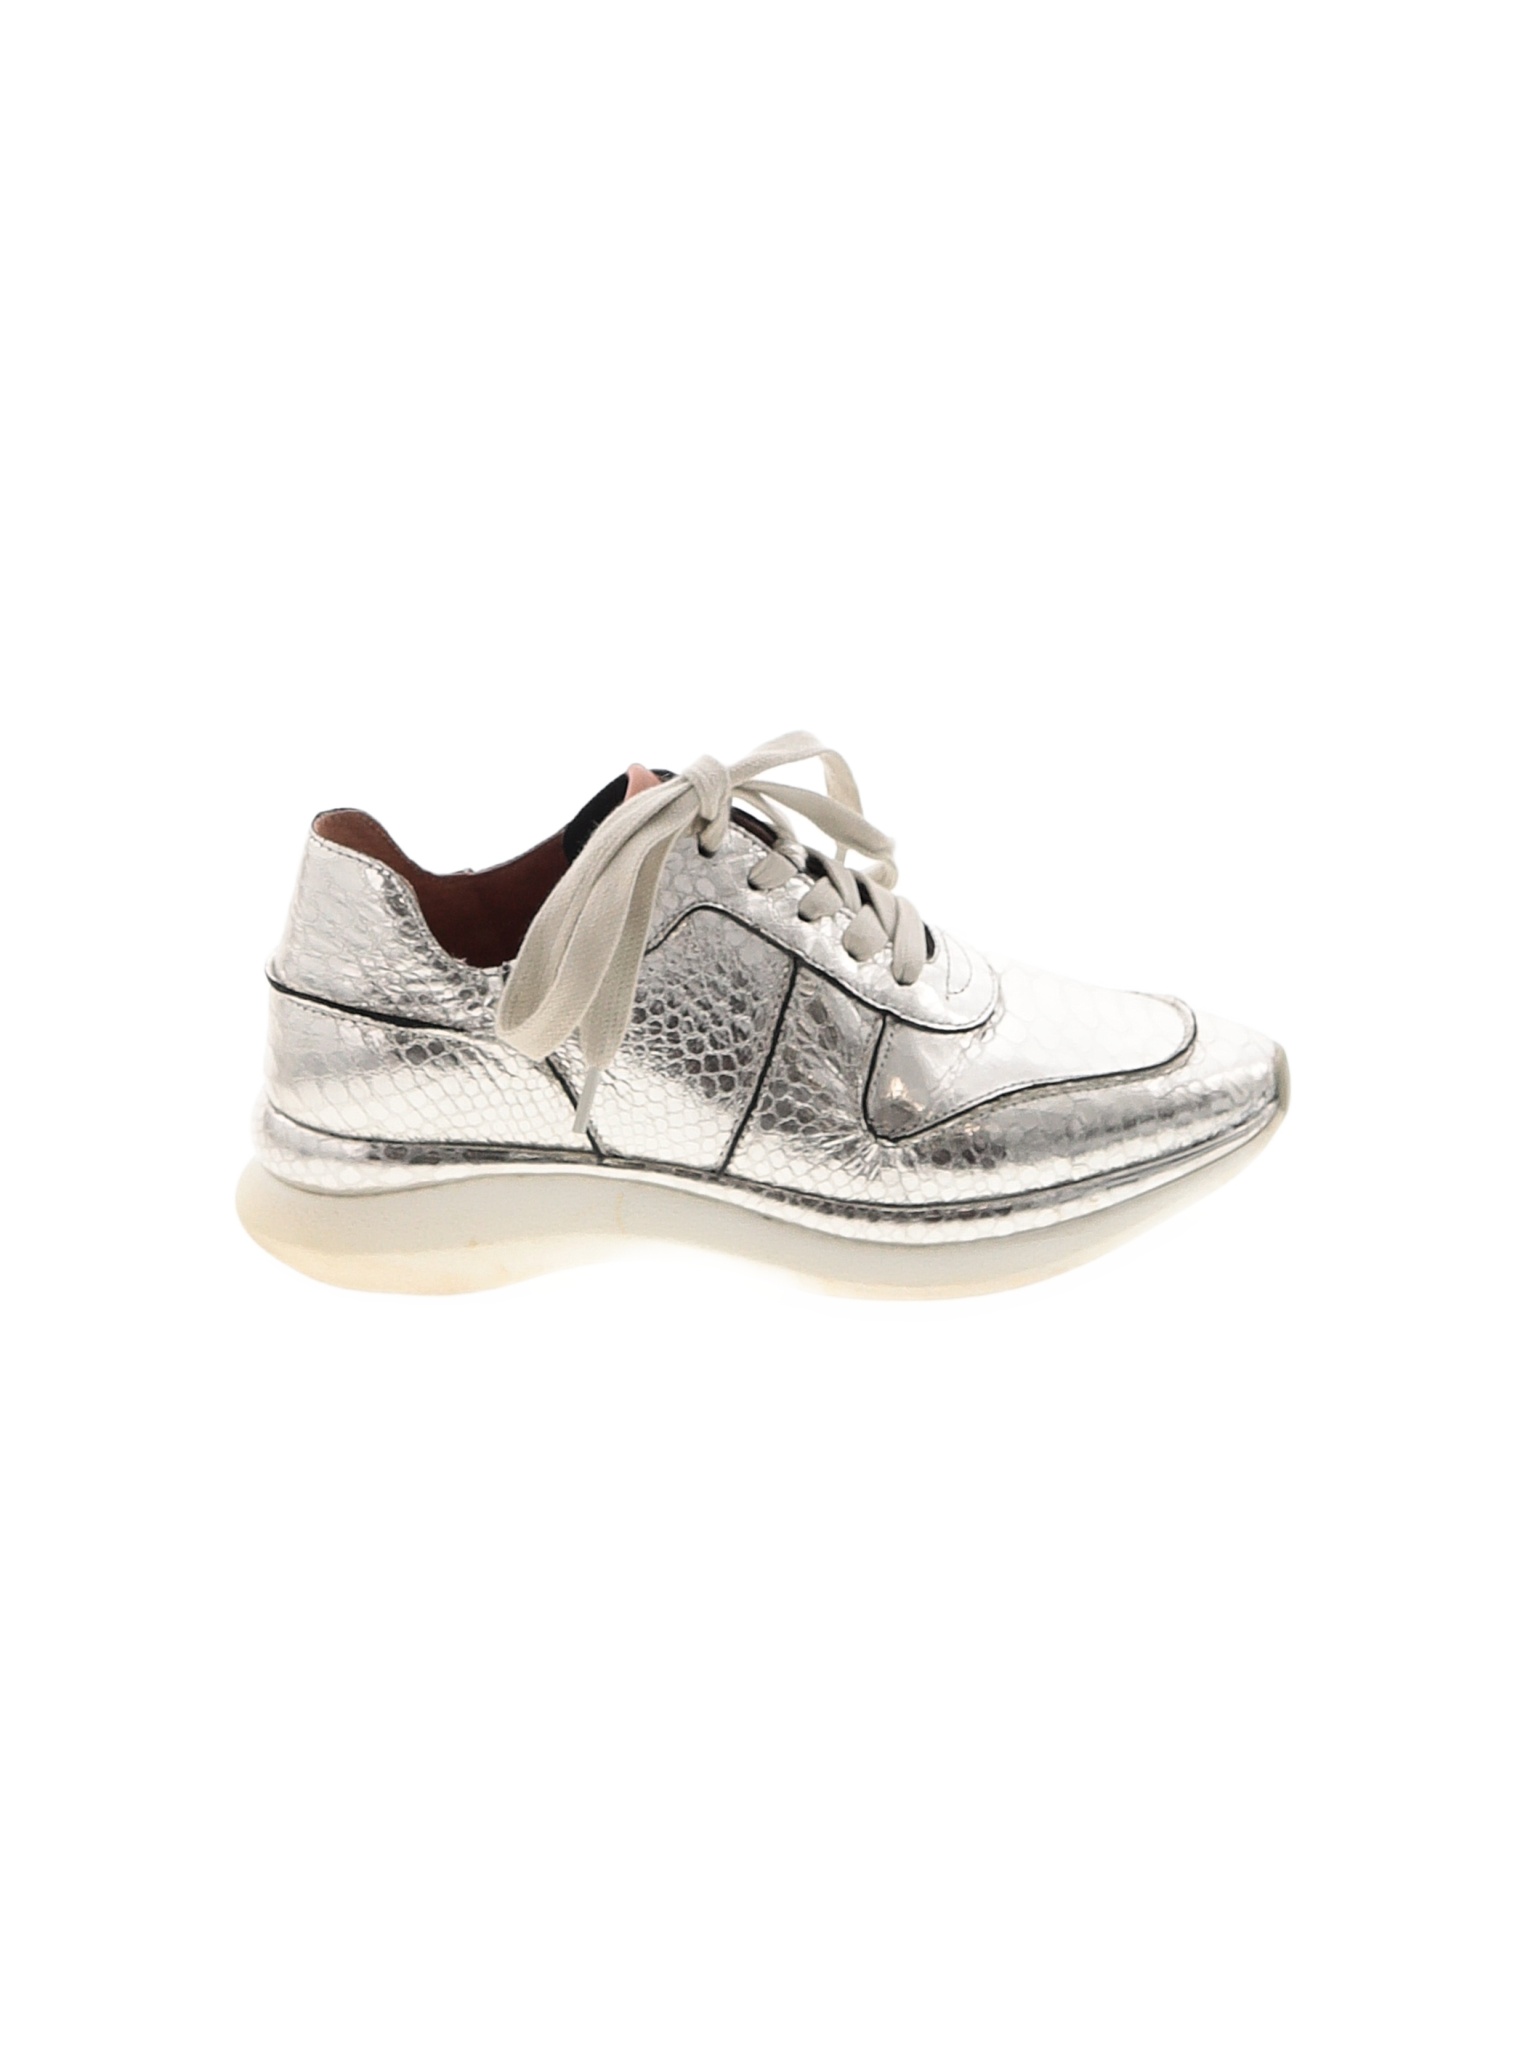 Gentle Souls Metallic Silver Sneakers Size 8 - 70% off | thredUP